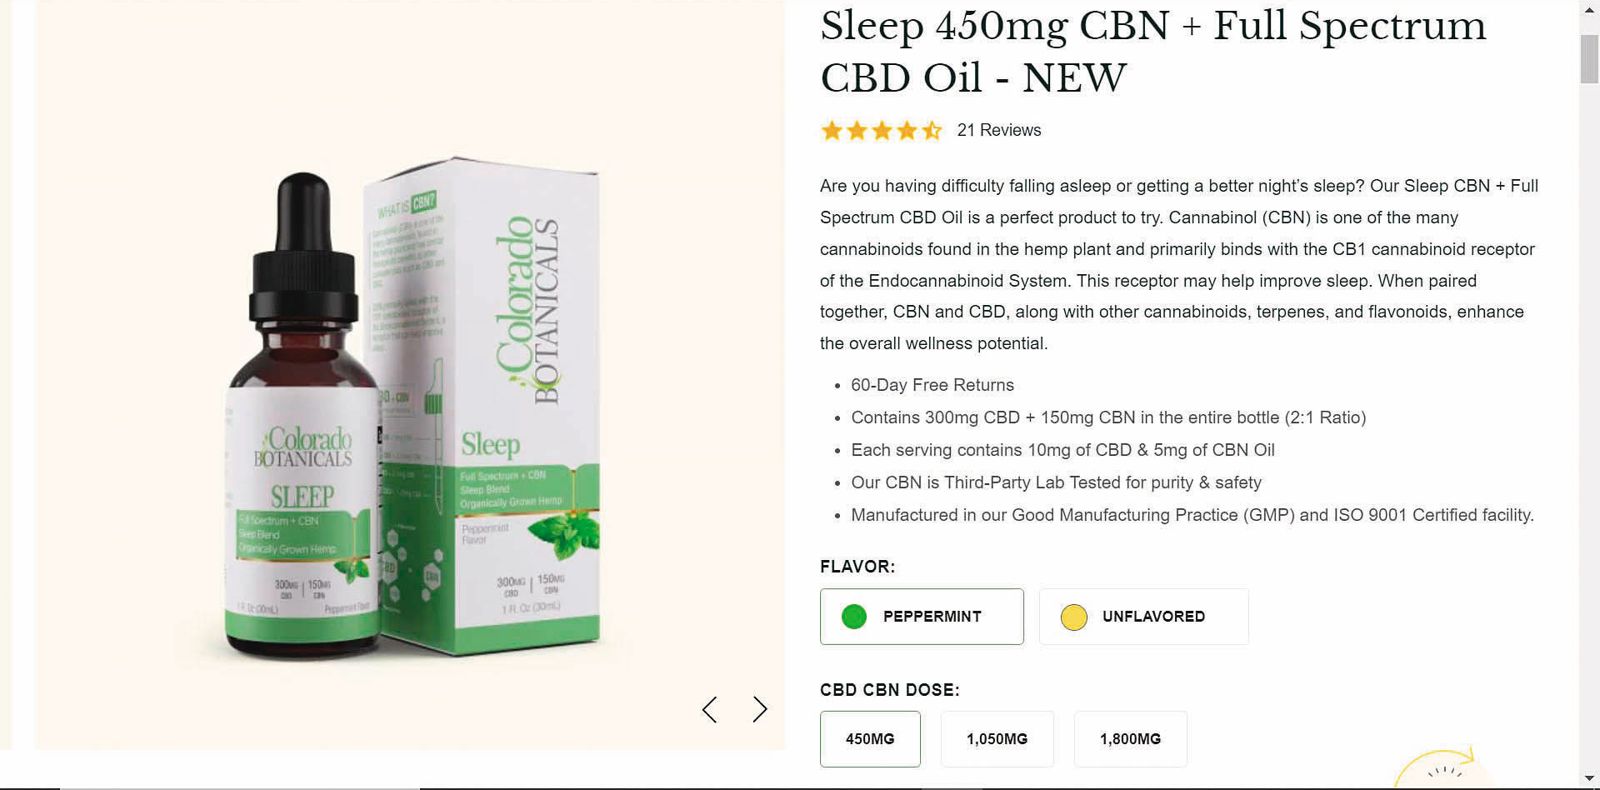 殷琪購買知名大麻產品網站「Colorado Botanicals」的Sleep精油，含有大麻成分。（圖／鏡週刊提供）